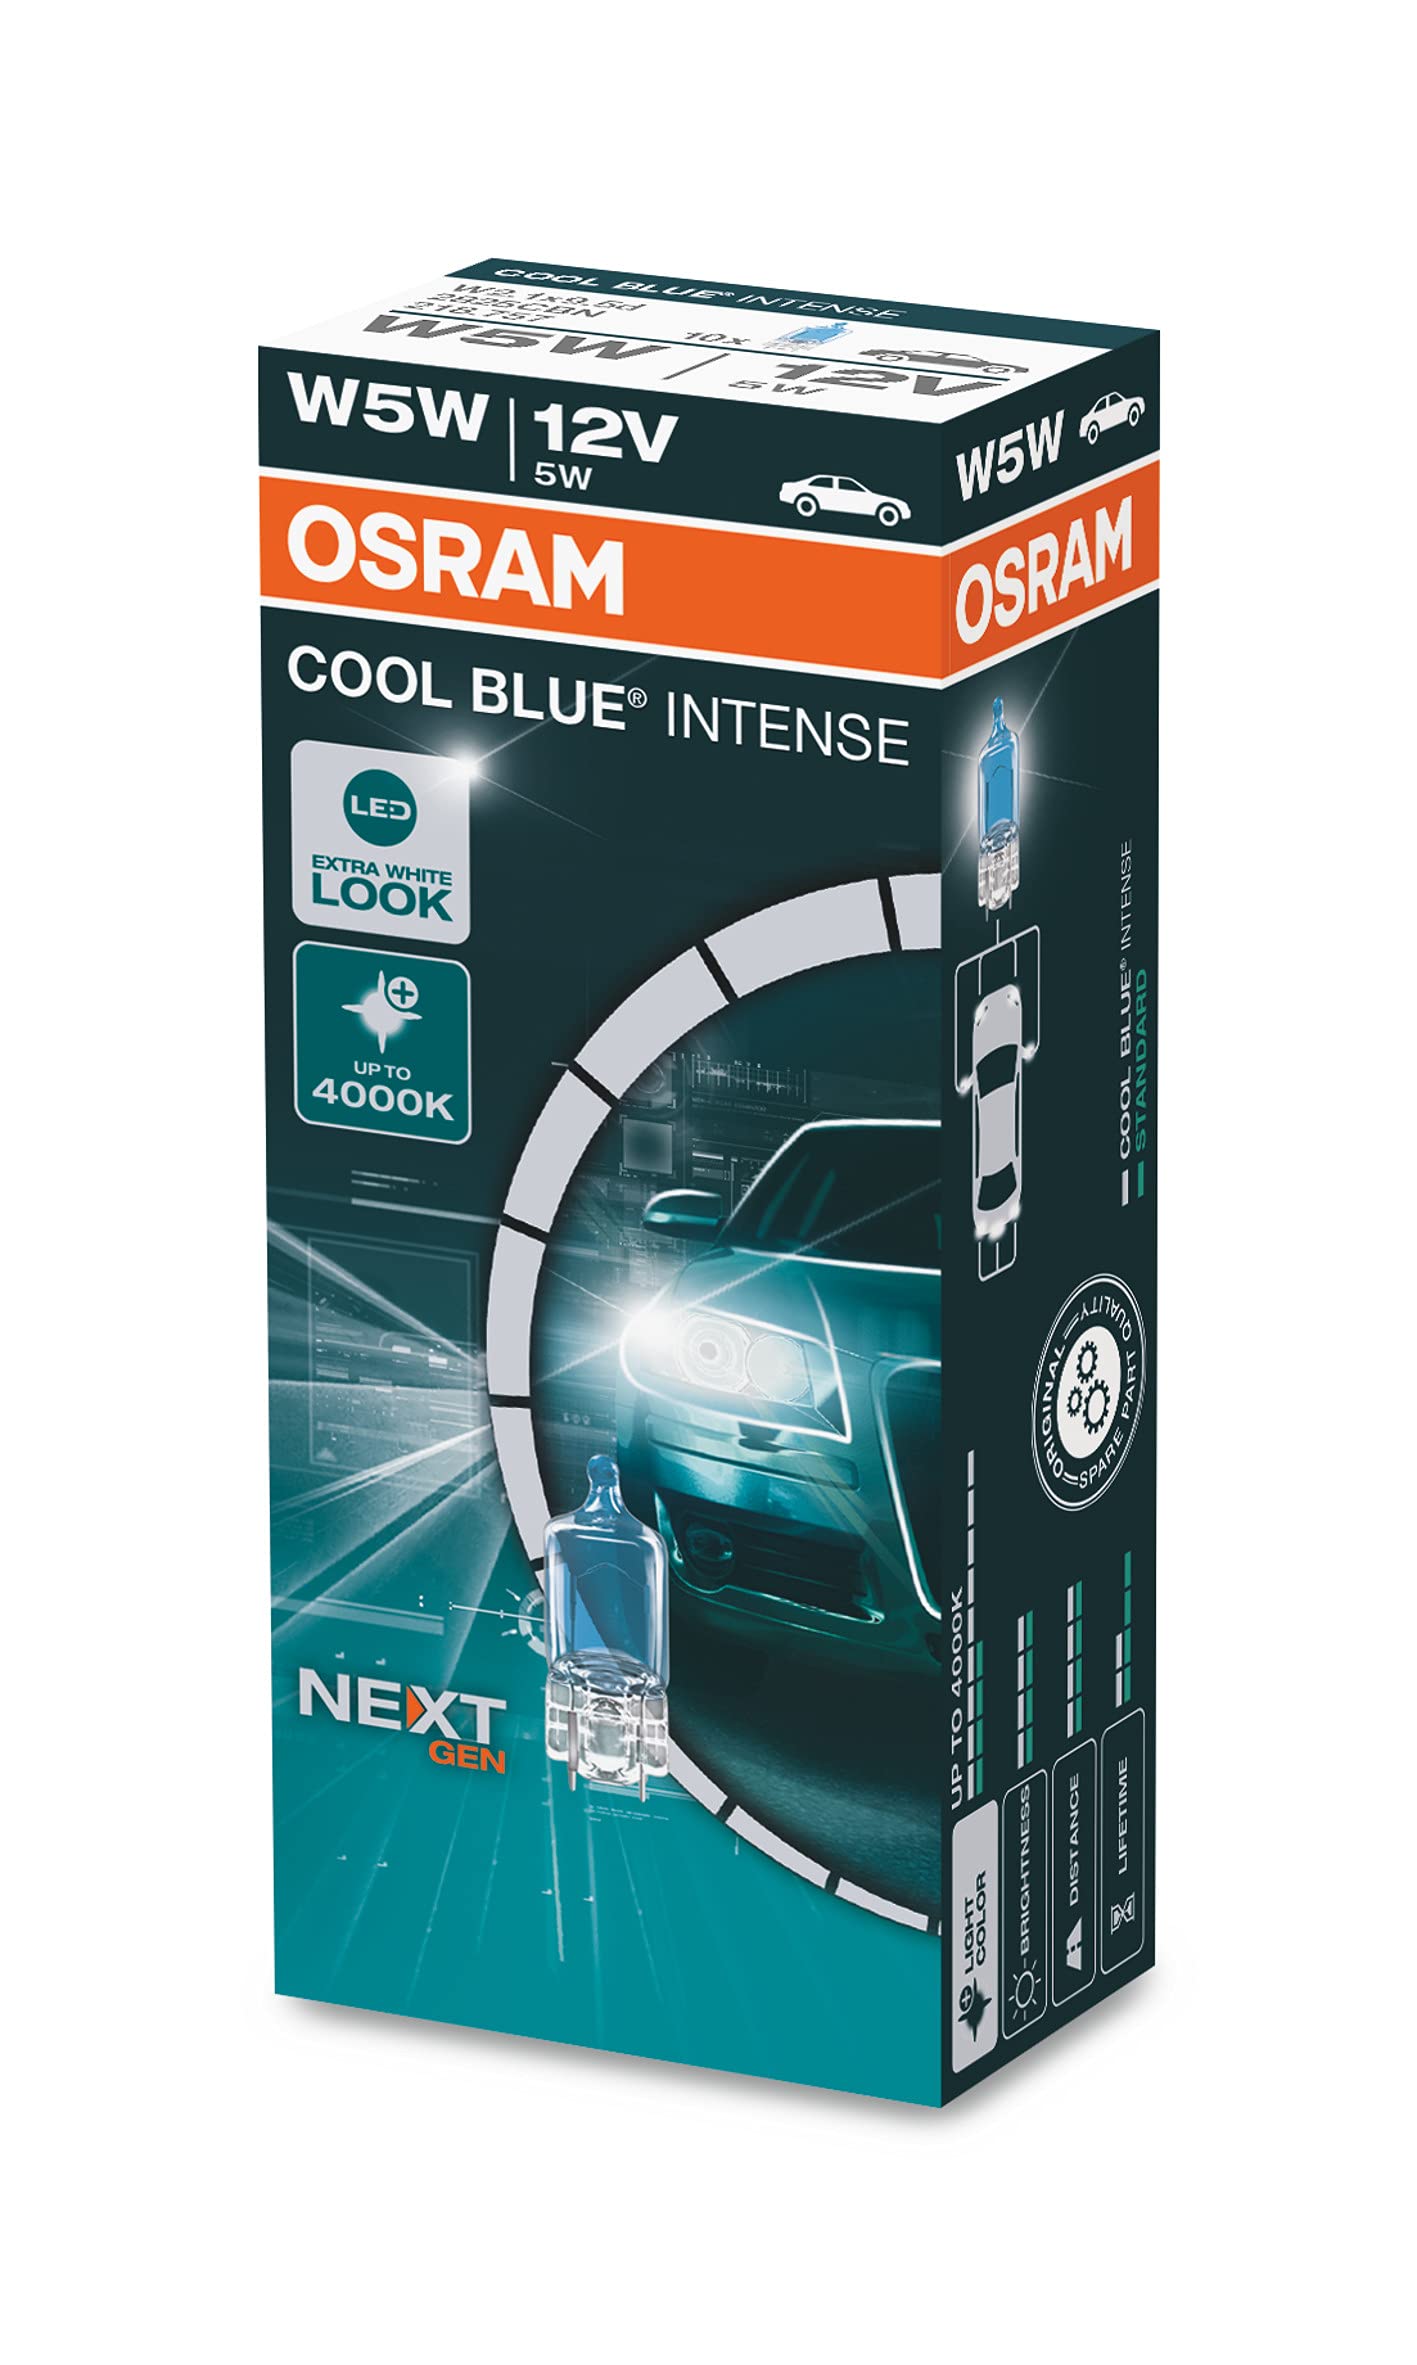 OSRAM COOL BLUE® INTENSE W5W, bis zu 4.000K, Halogen-Signallampe, Faltschachtel (10 Lampen) von Osram